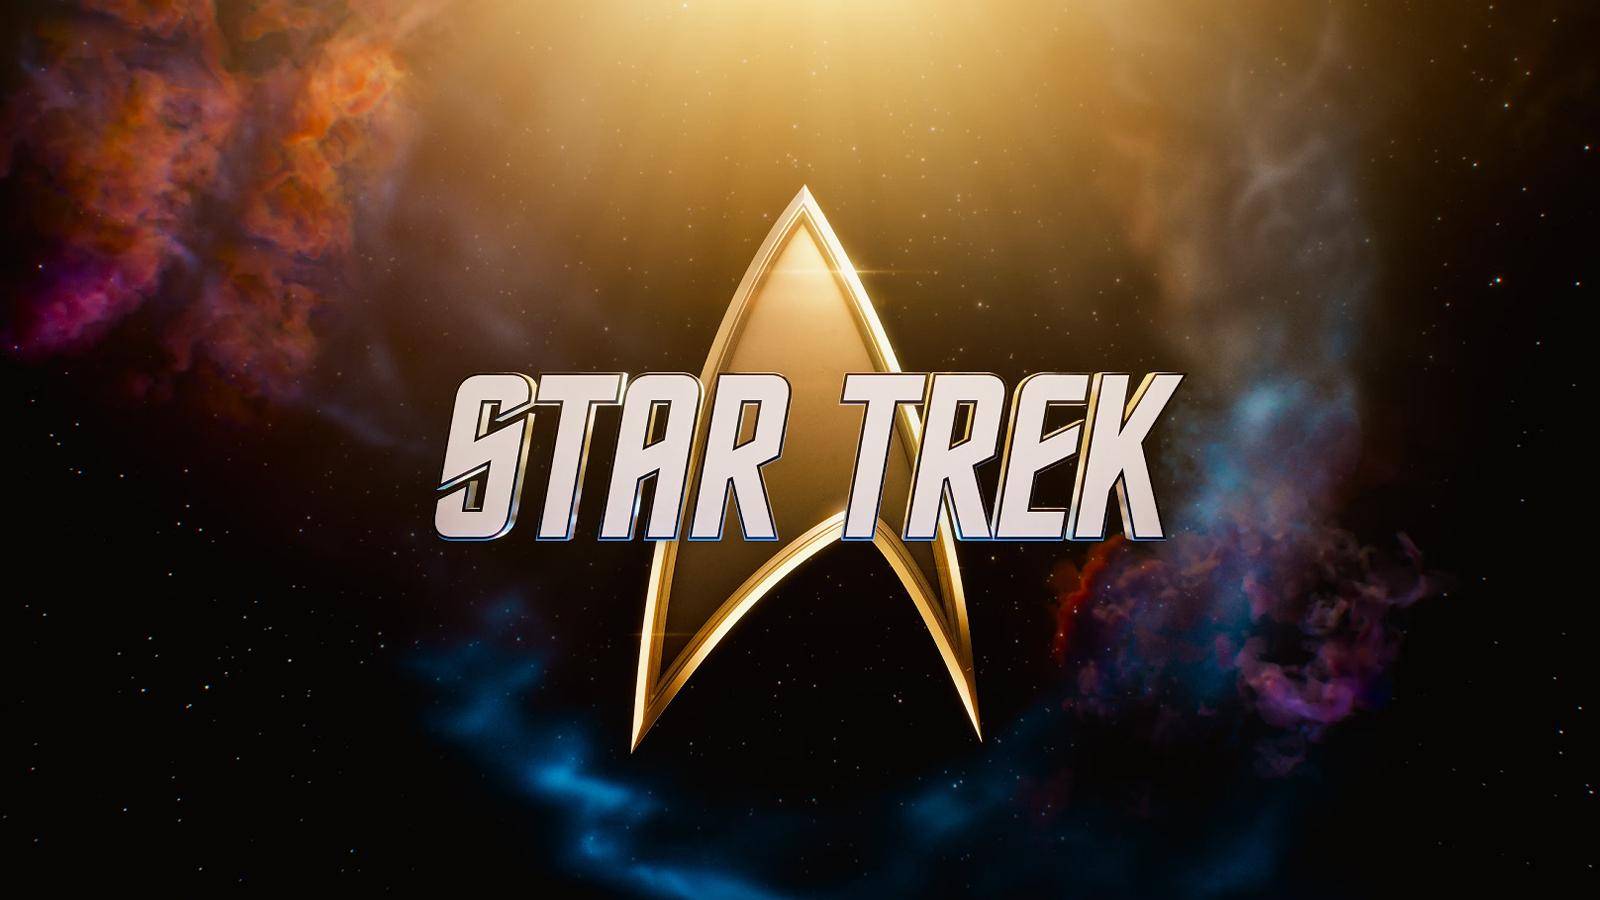 The Star Trek franchise's logo